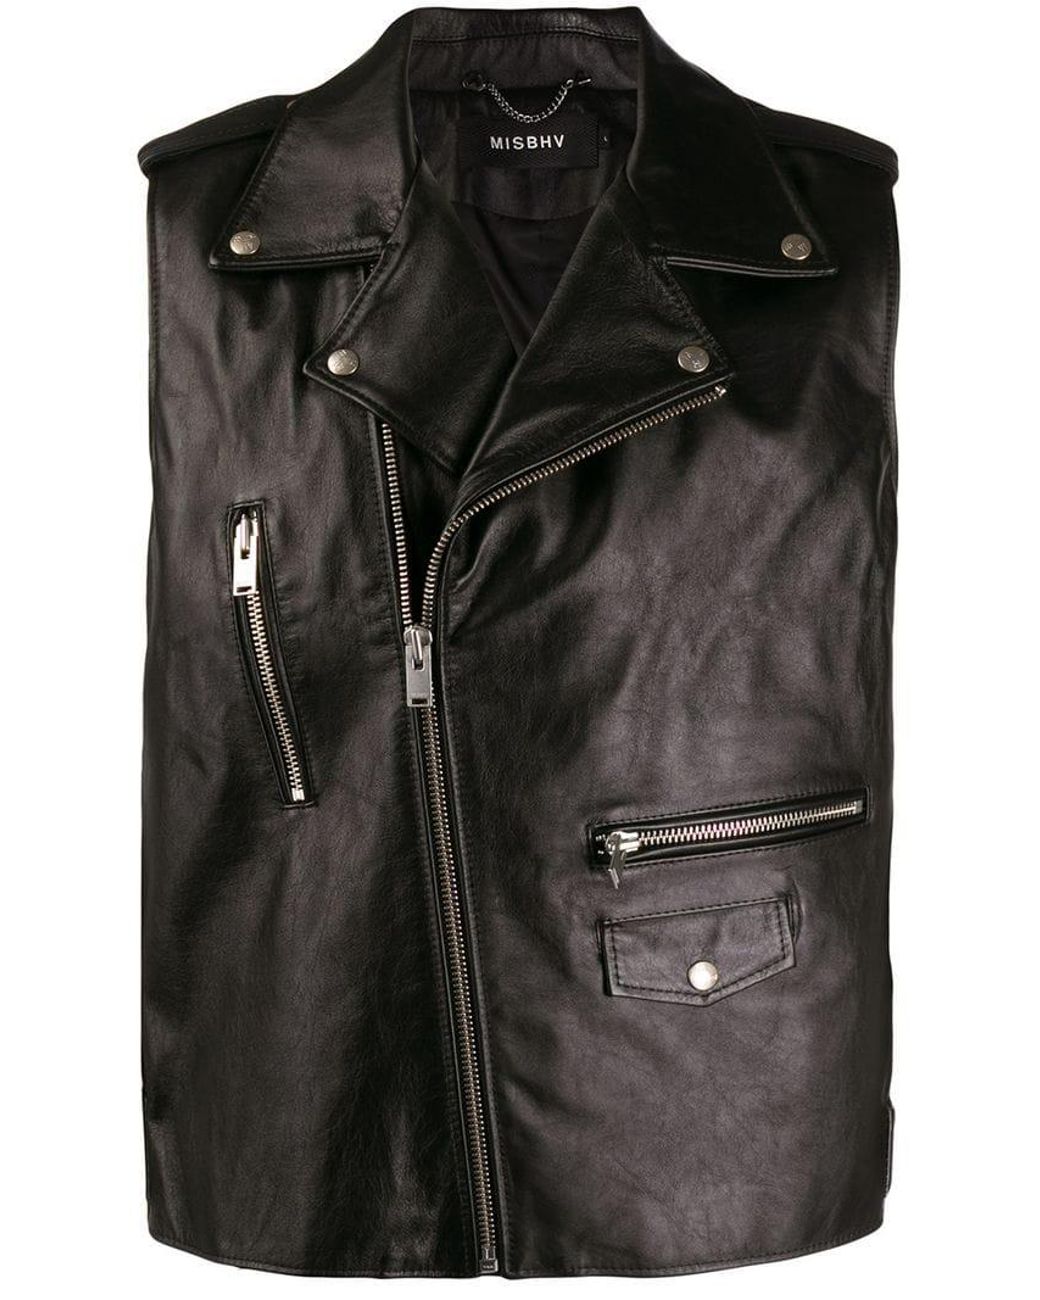 MISBHV Biker-style Sleeveless Jacket in Black for Men - Lyst